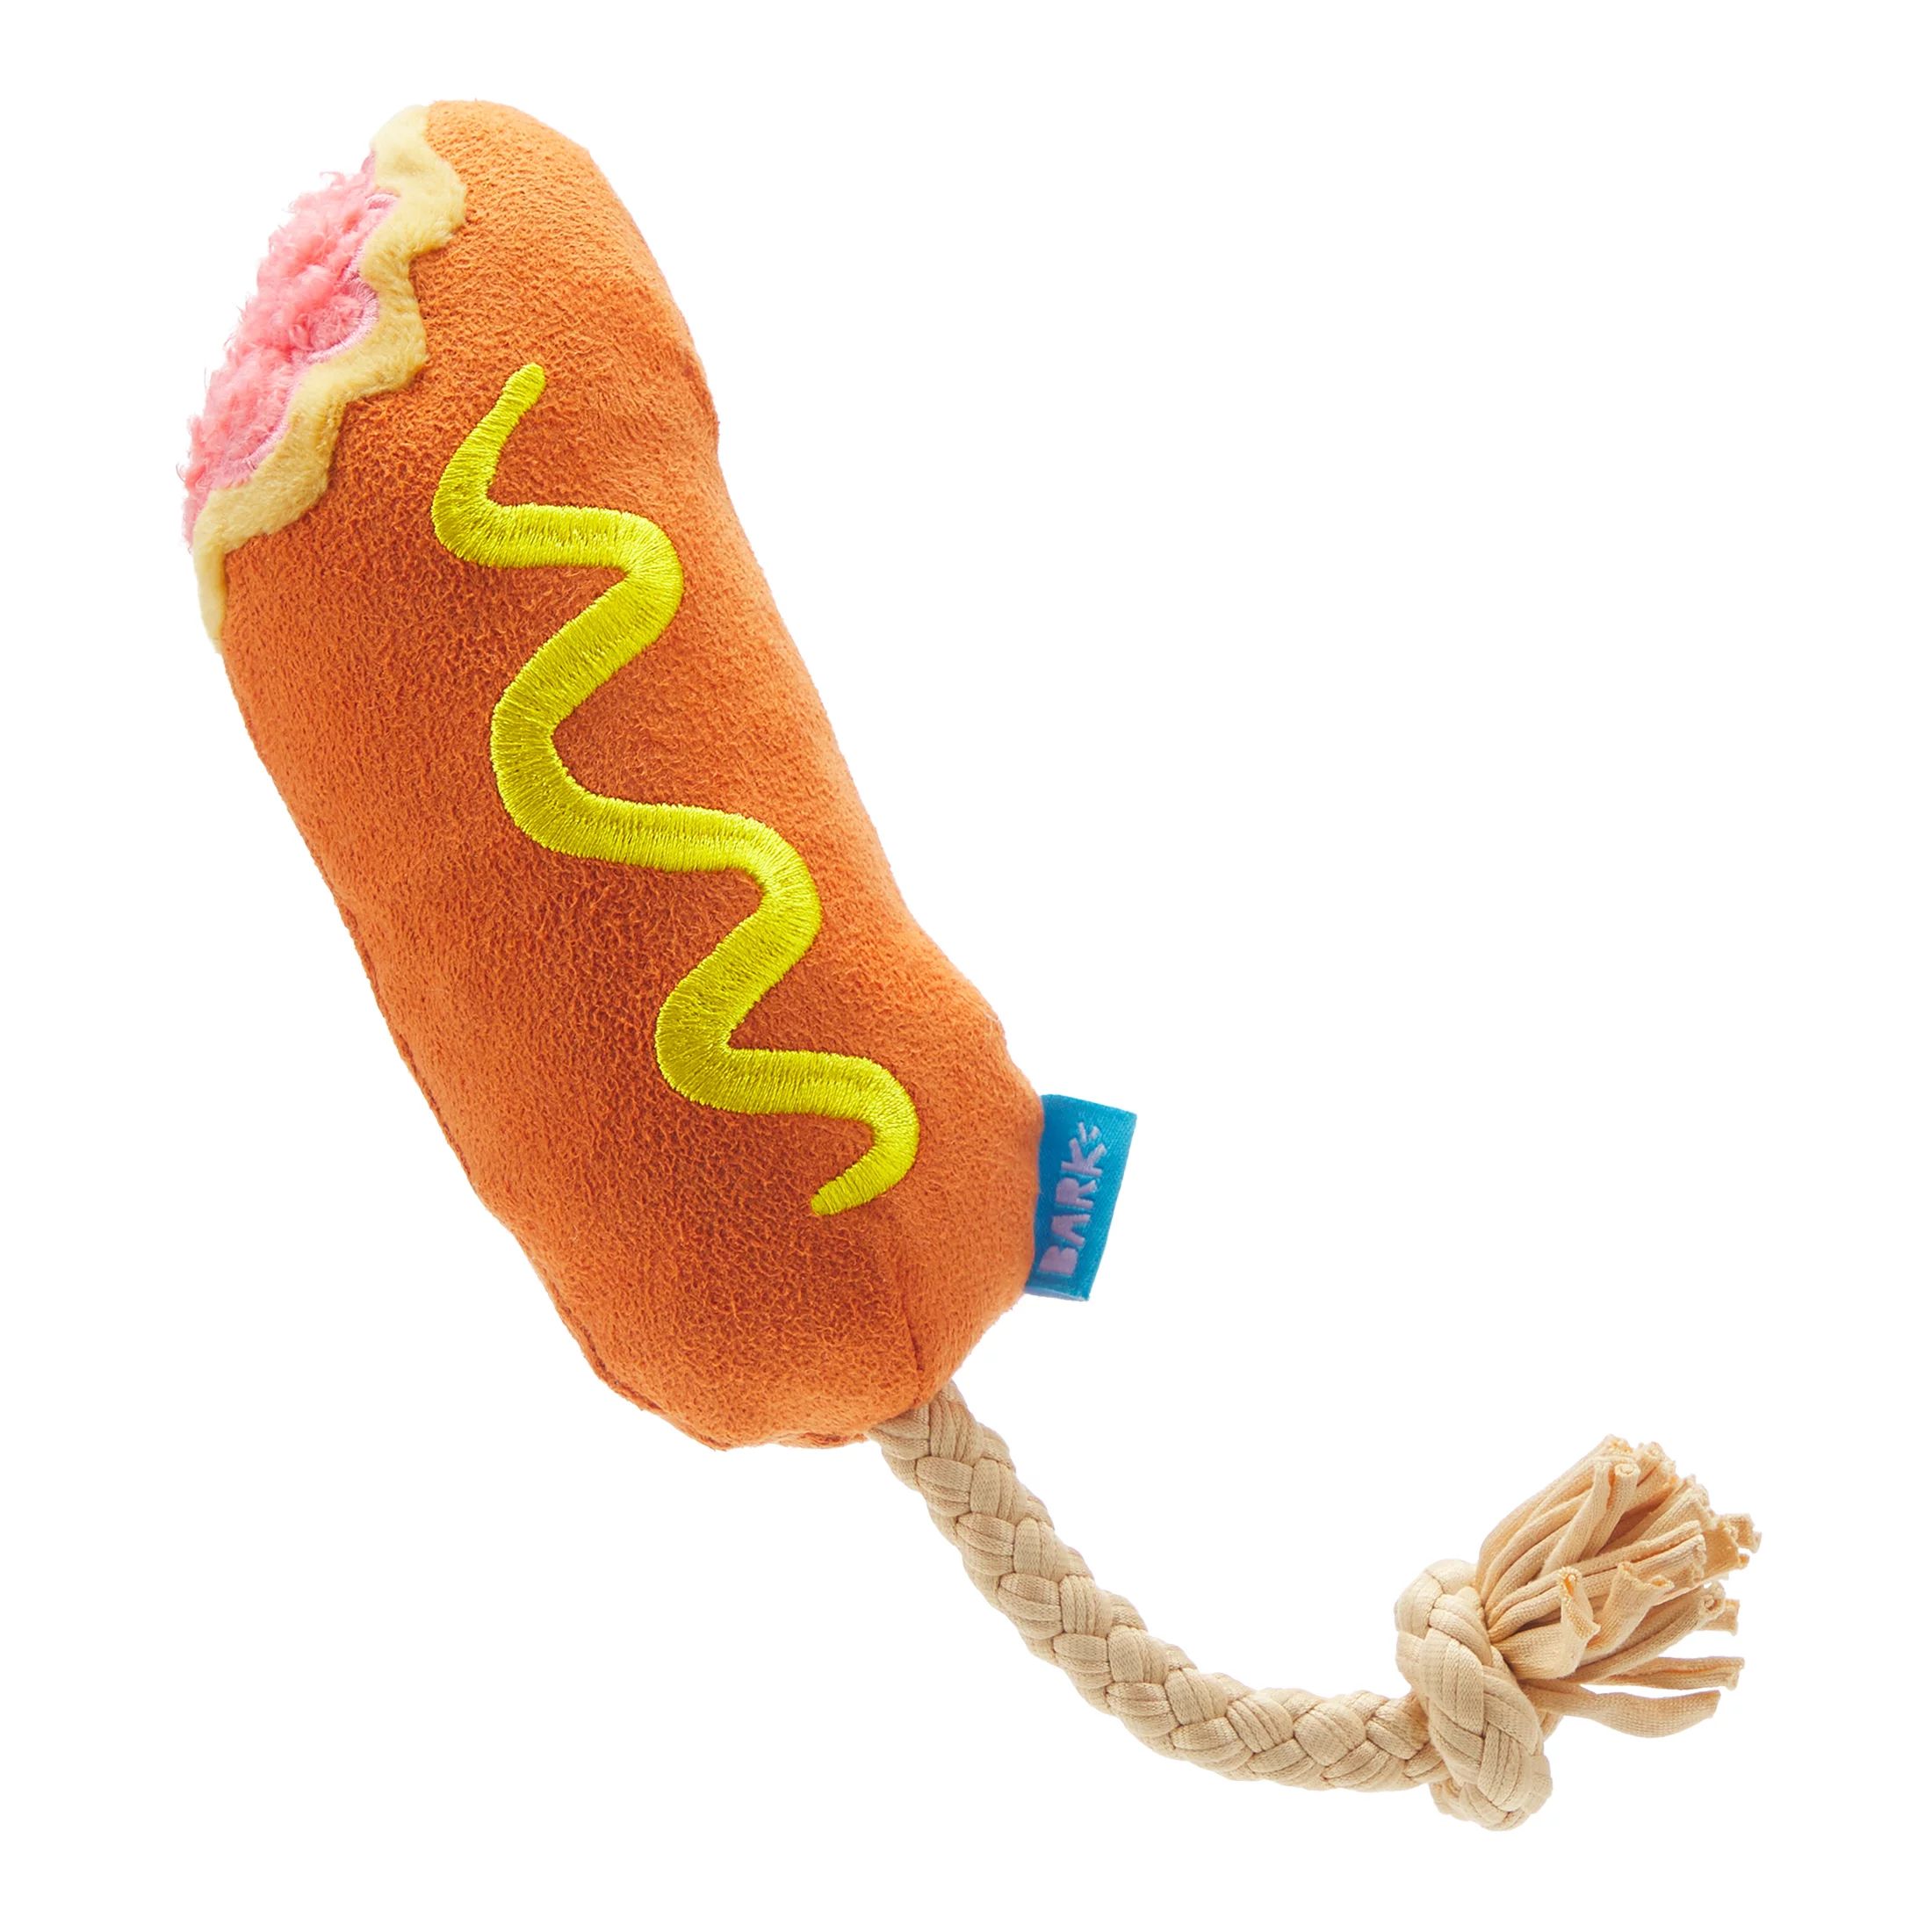 BARK Corn Dog Tug - Yankee Doodle Dog Toy, great for Tug-O-War, XS-M dogs | Walmart (US)